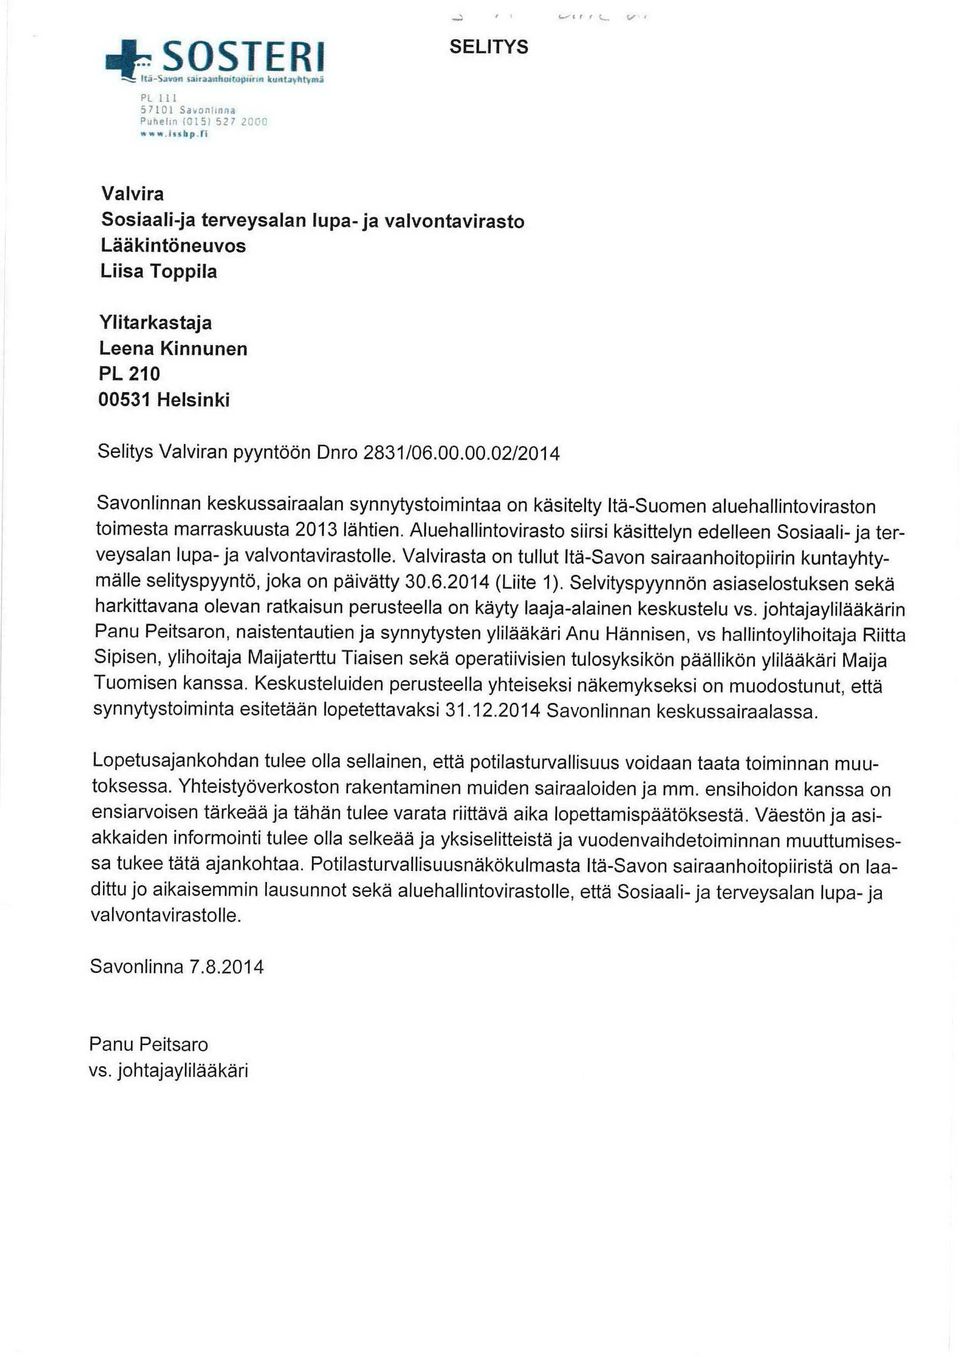 31 Helsinki Selitys Valviran pyyntöön Dnro 2831 /06.00.00.02/2014 Savonlinnan keskussairaalan synnytystoimintaa on käsitelty Itä-Suomen aluehallintoviraston toimesta marraskuusta 2013 lähtien.